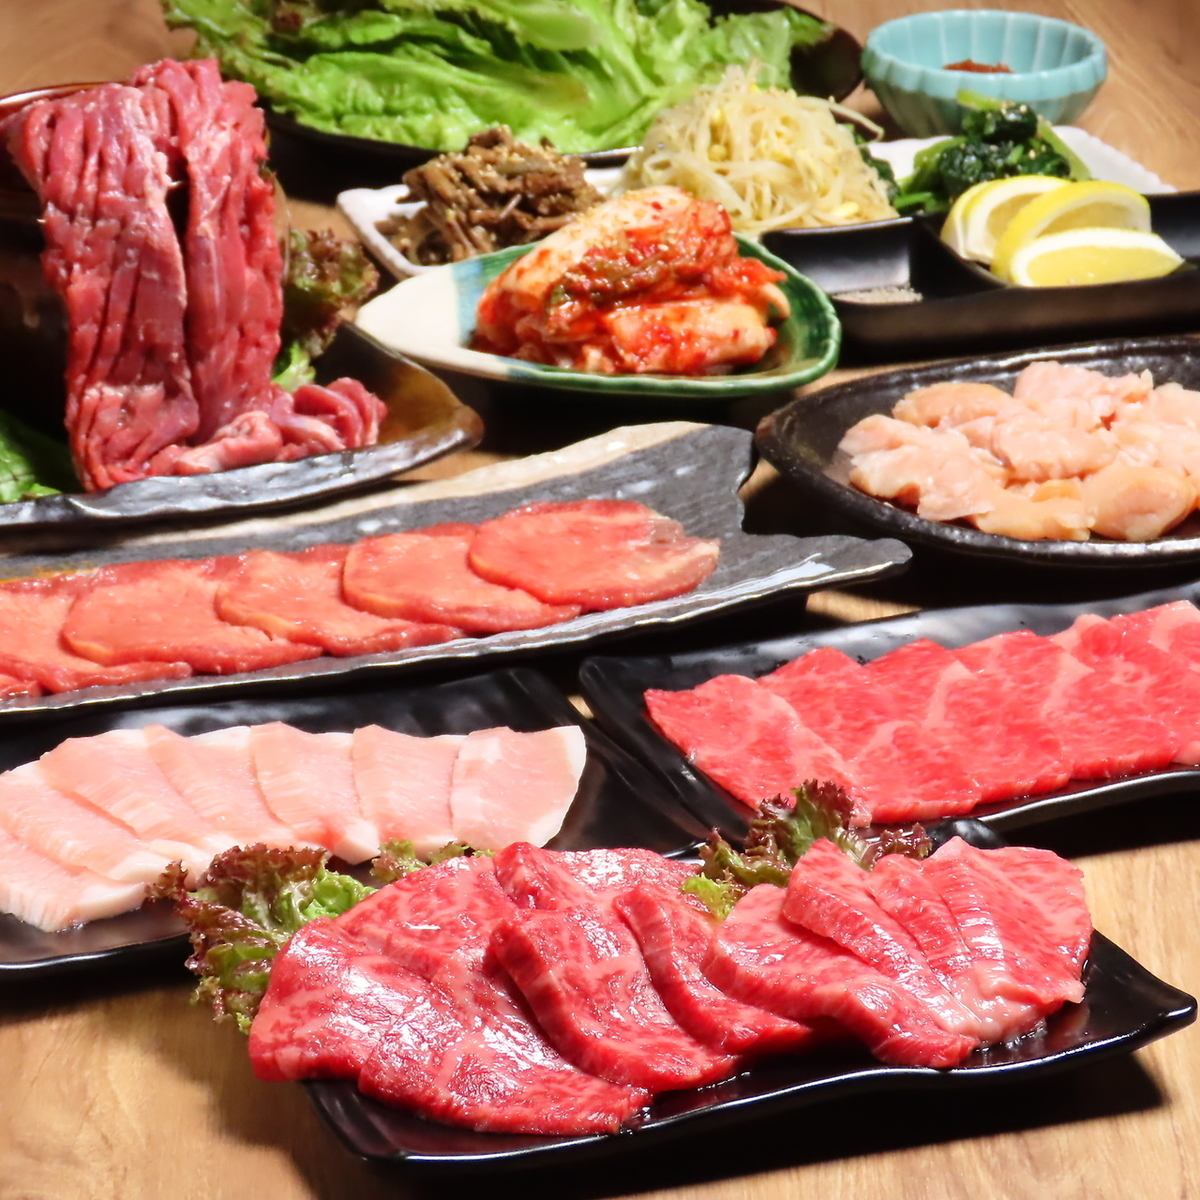 无限畅饮748日元(含税)起!一起享受便宜又美味的烤肉和日本酒吧!